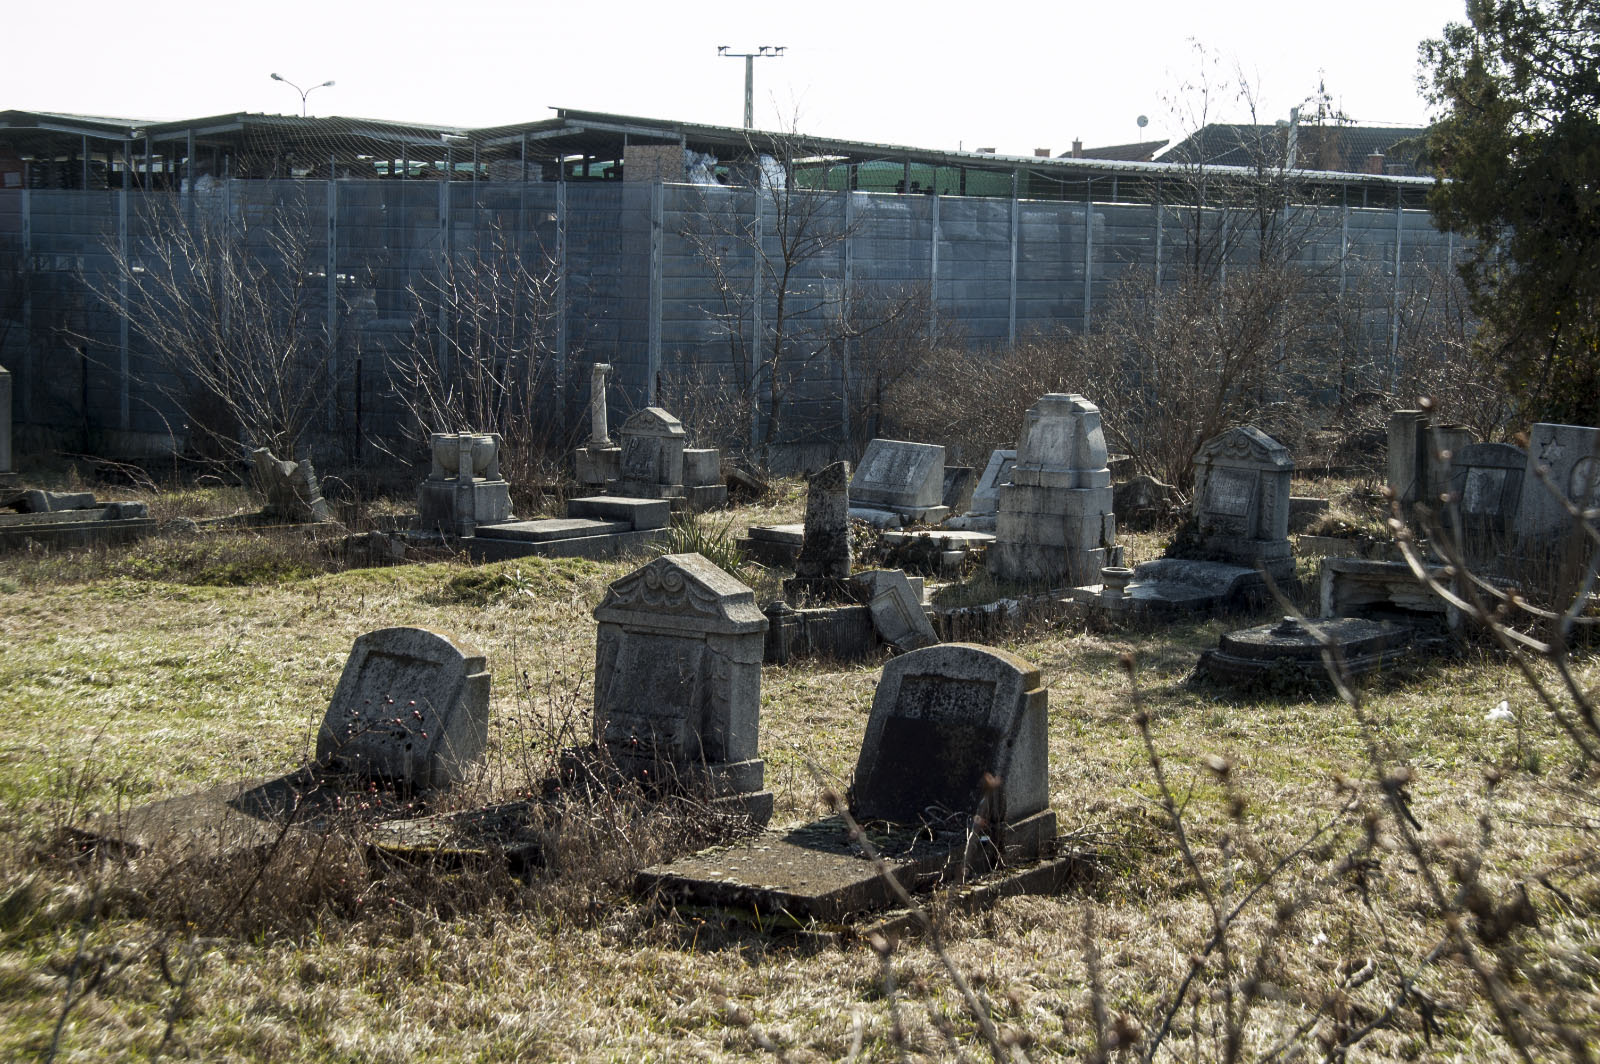 Sallai úti zsidó temető - fotó: hatja